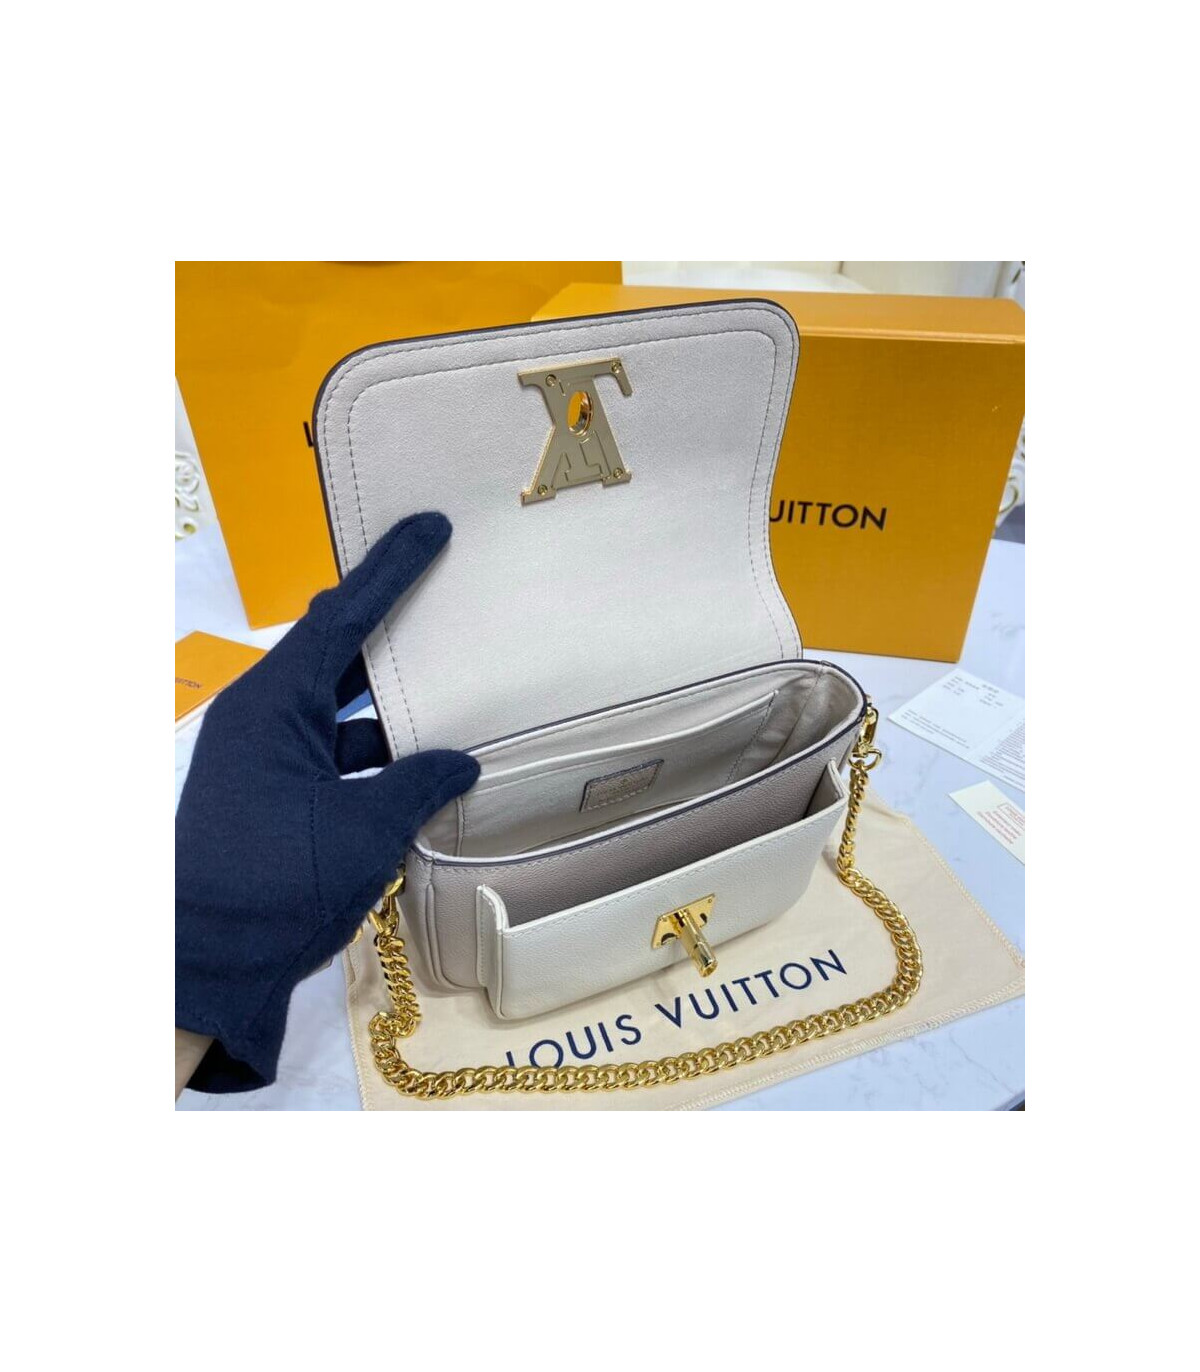 Louis Vuitton LOCKME 2021-22FW Lockme Tender (M58554)